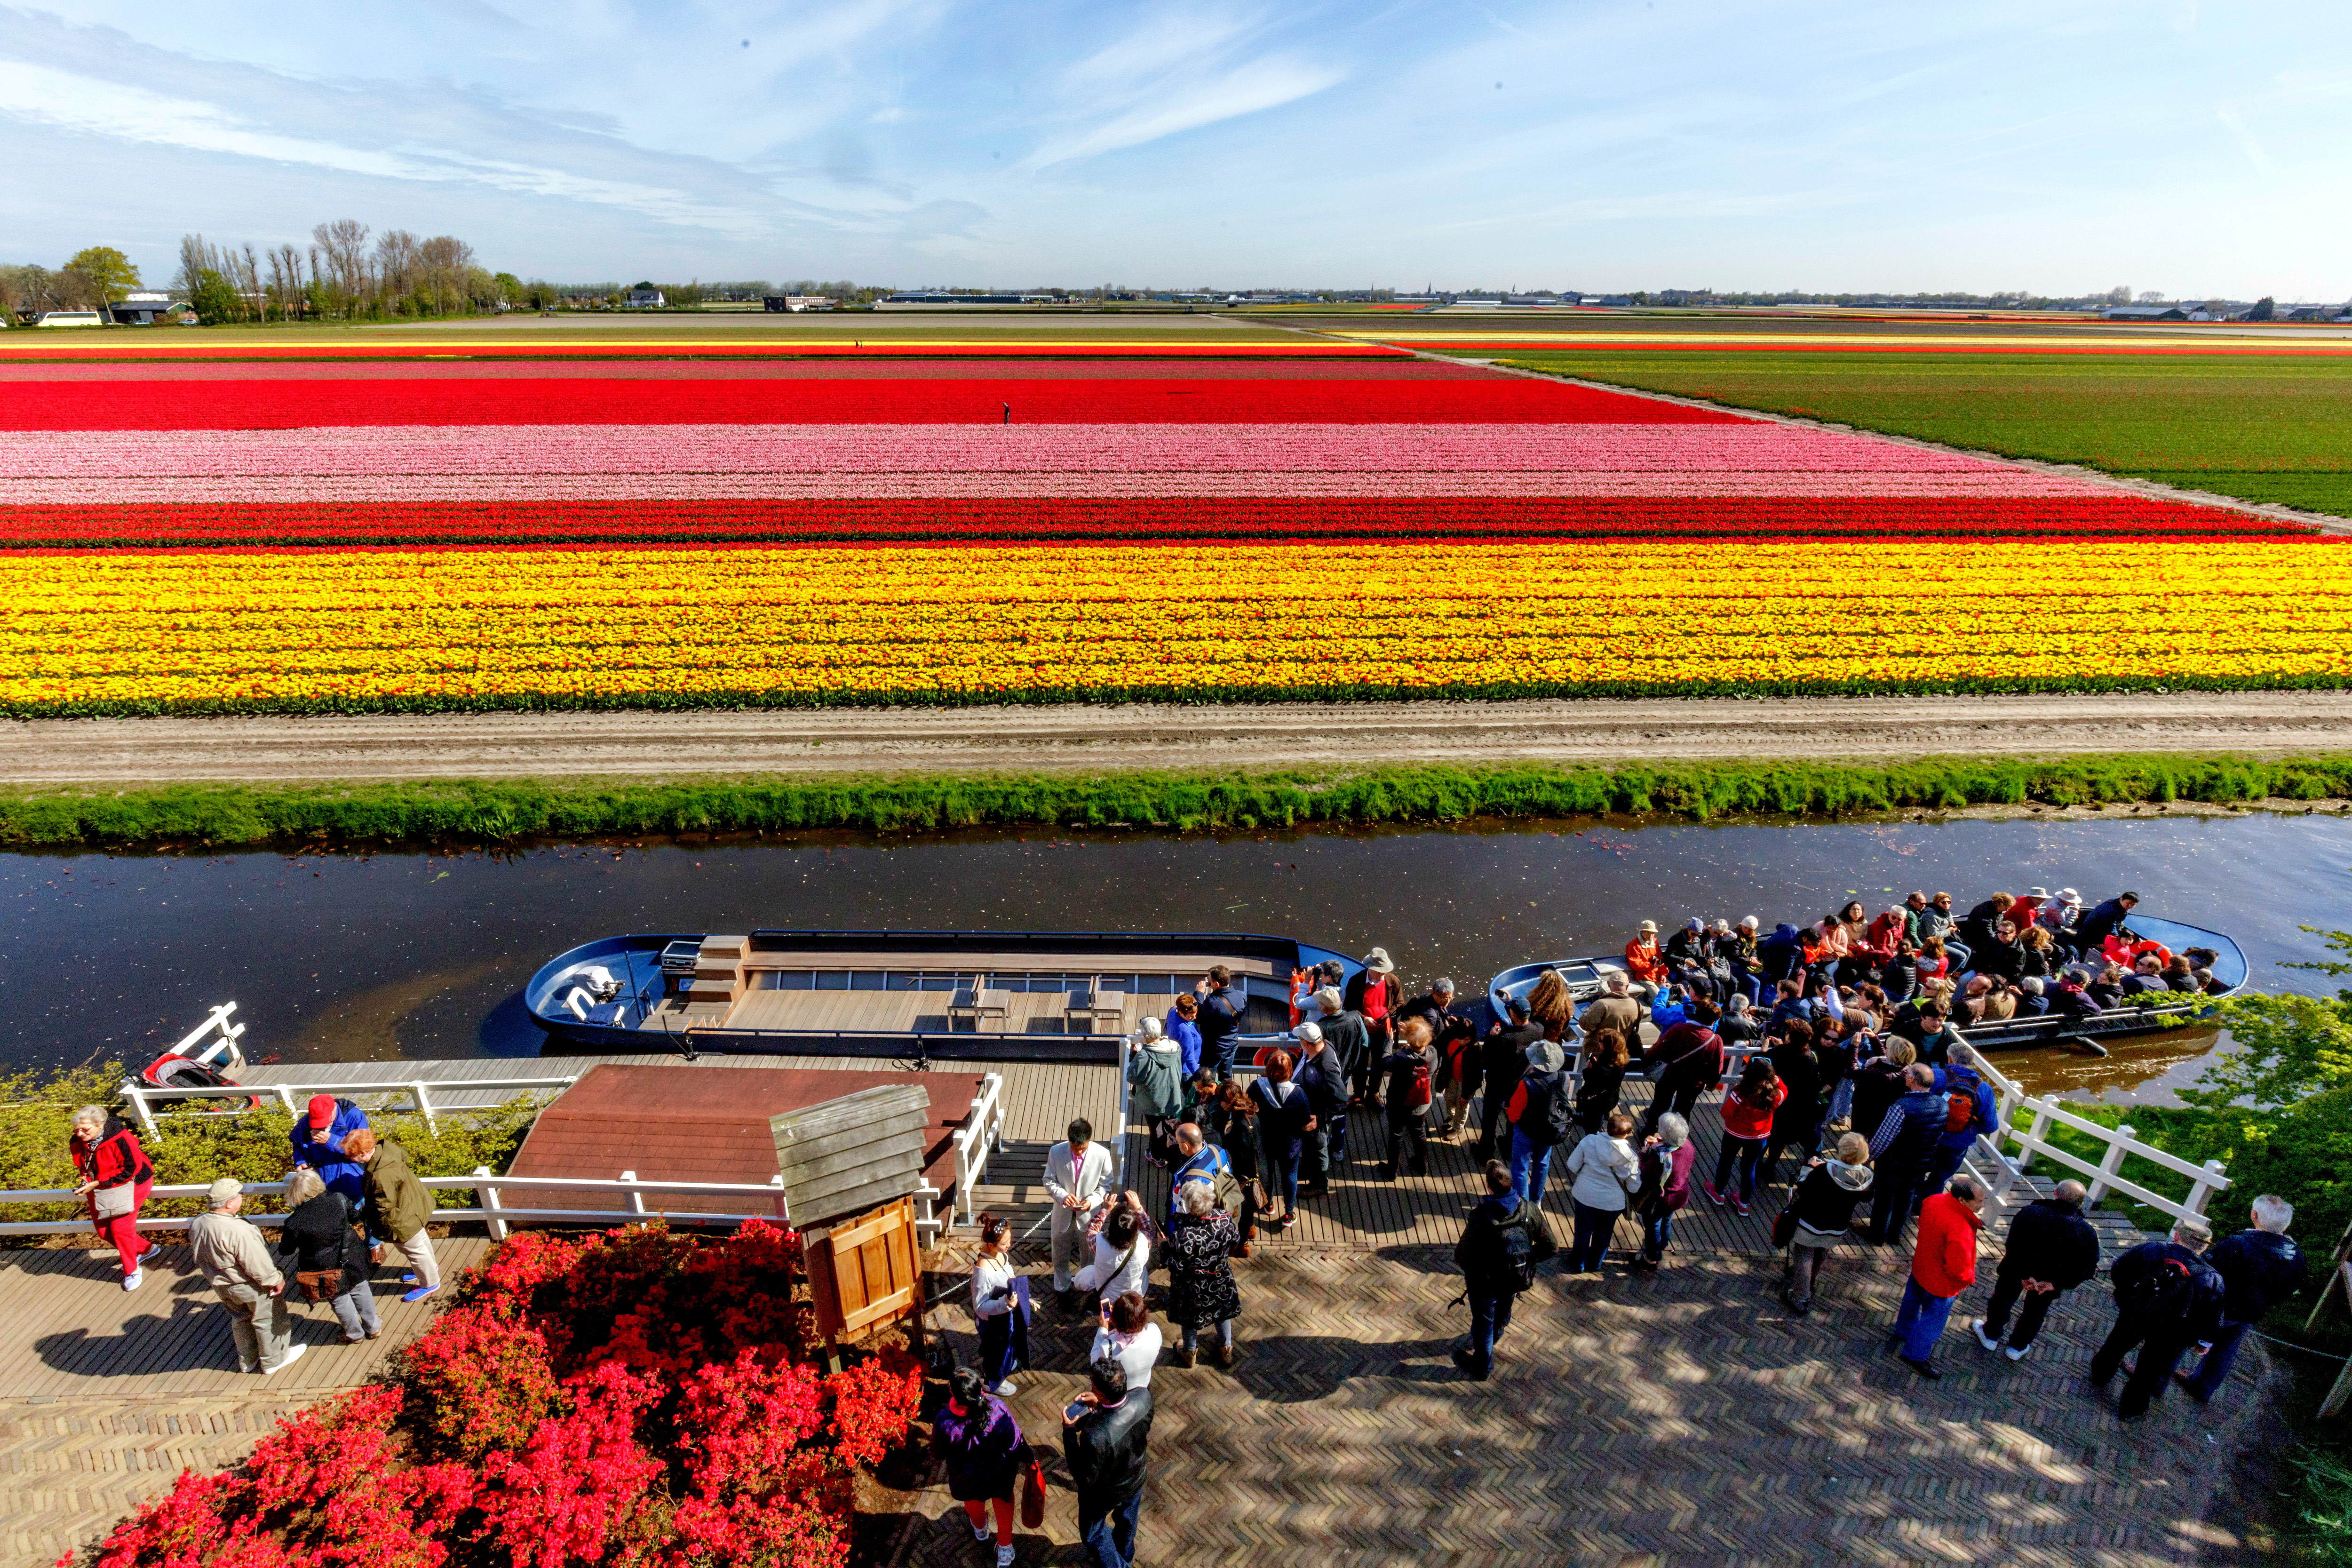 Siete curiosidades sobre un espectacular parque de tulipanes en Holanda